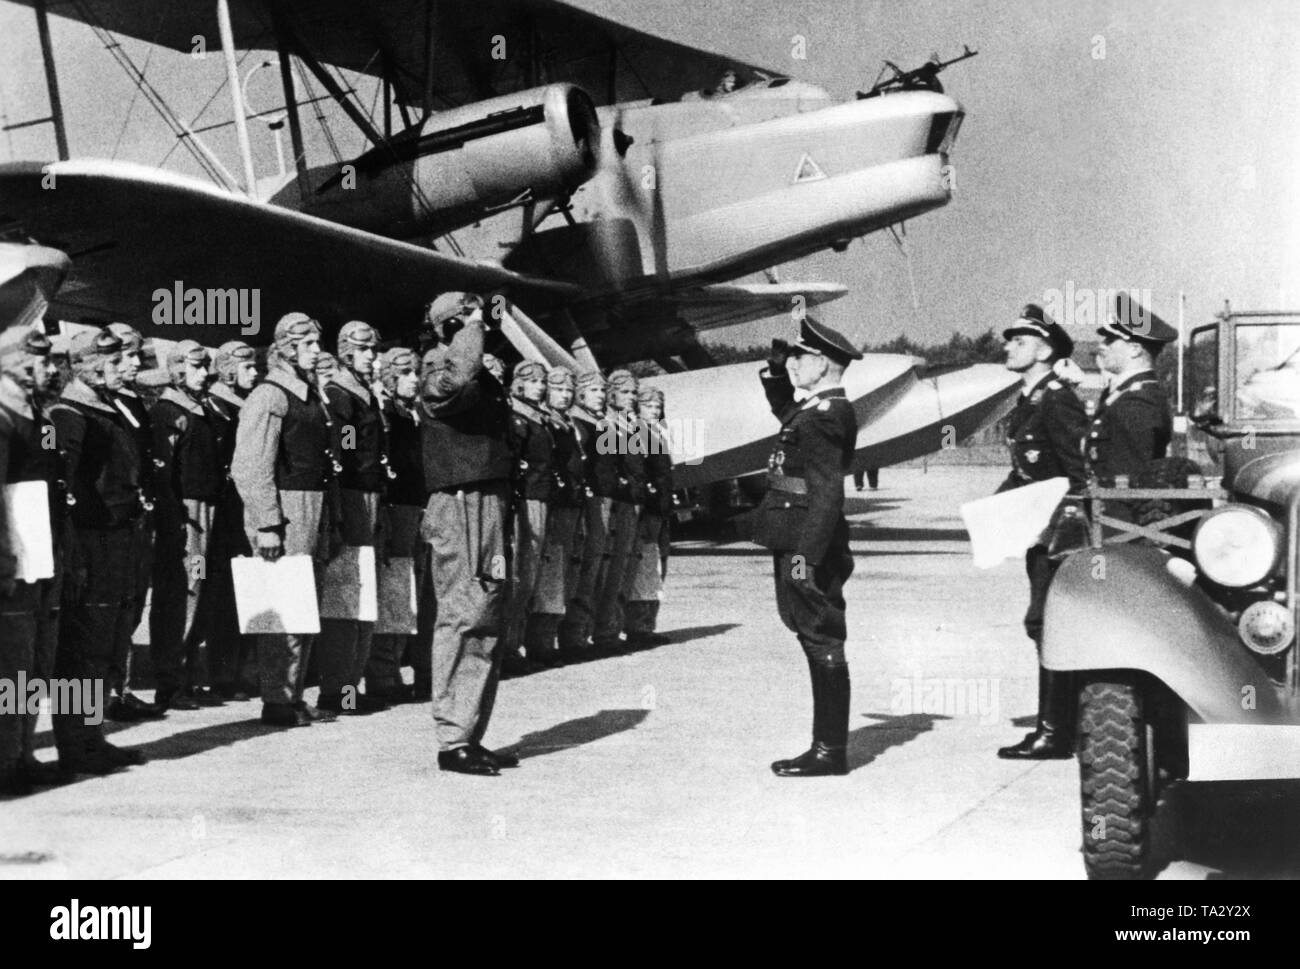 Il comandante dello squadrone riporta la schierate equipaggio al comandante. Si tratta di un filmstill dalla propaganda film 'Flieger zur vedere' dal 1938/1939. Foto Stock